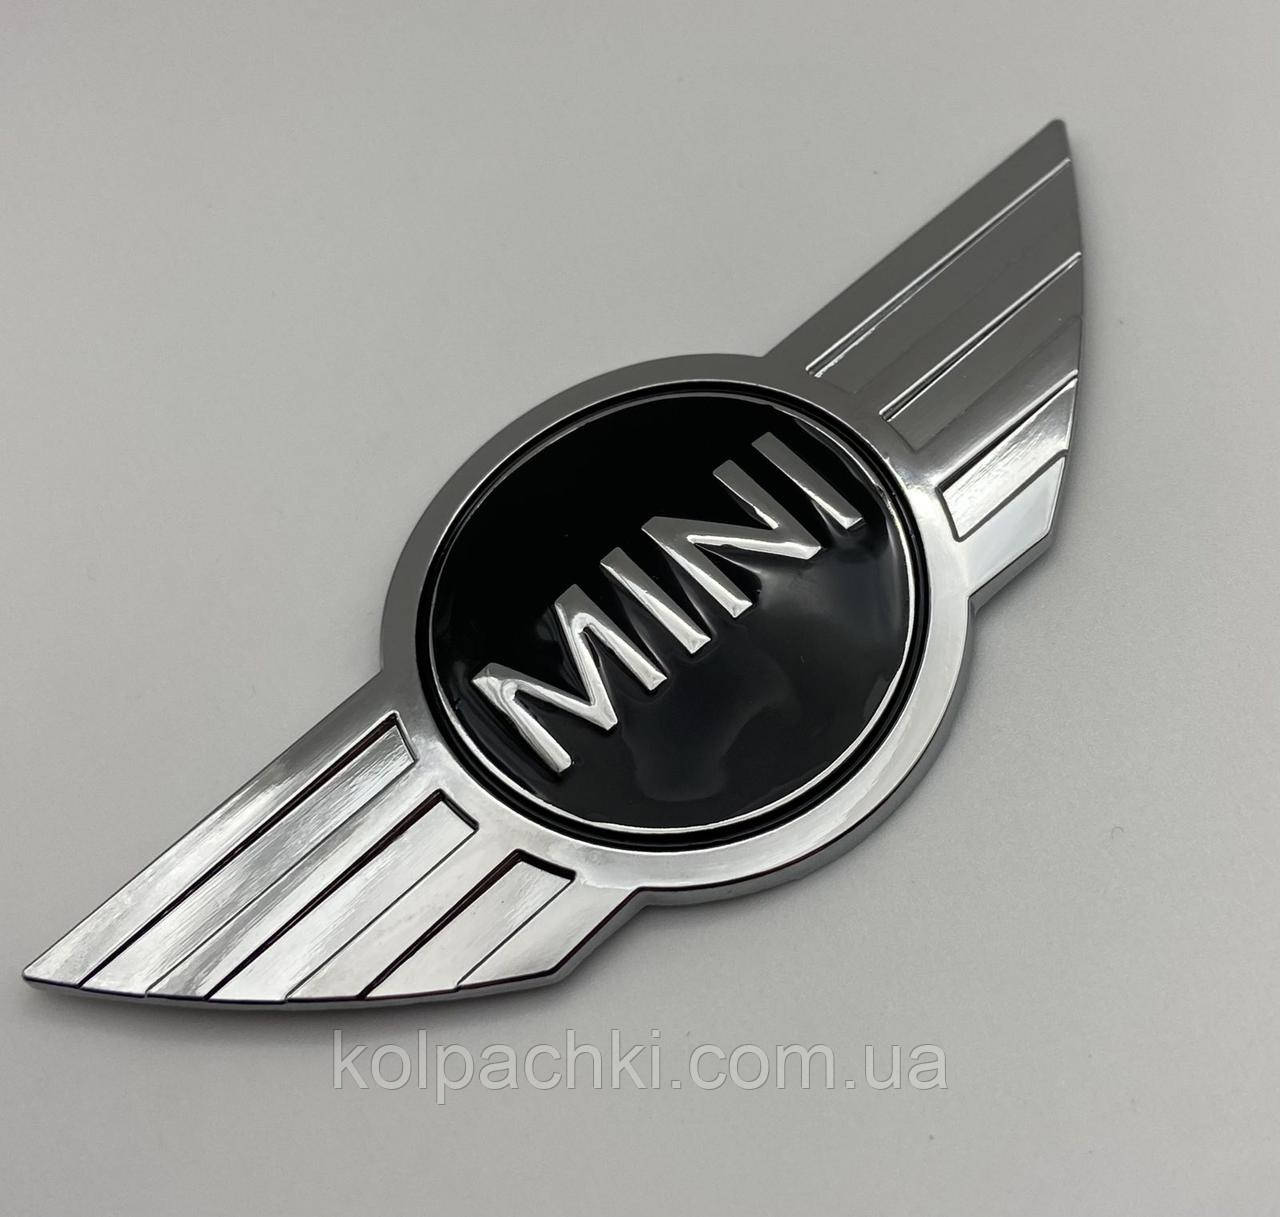 Емблема MINI (Міні) 115 mm (значок, наклейка, логотип на капот багажник) Сріблясто-Чорна метал